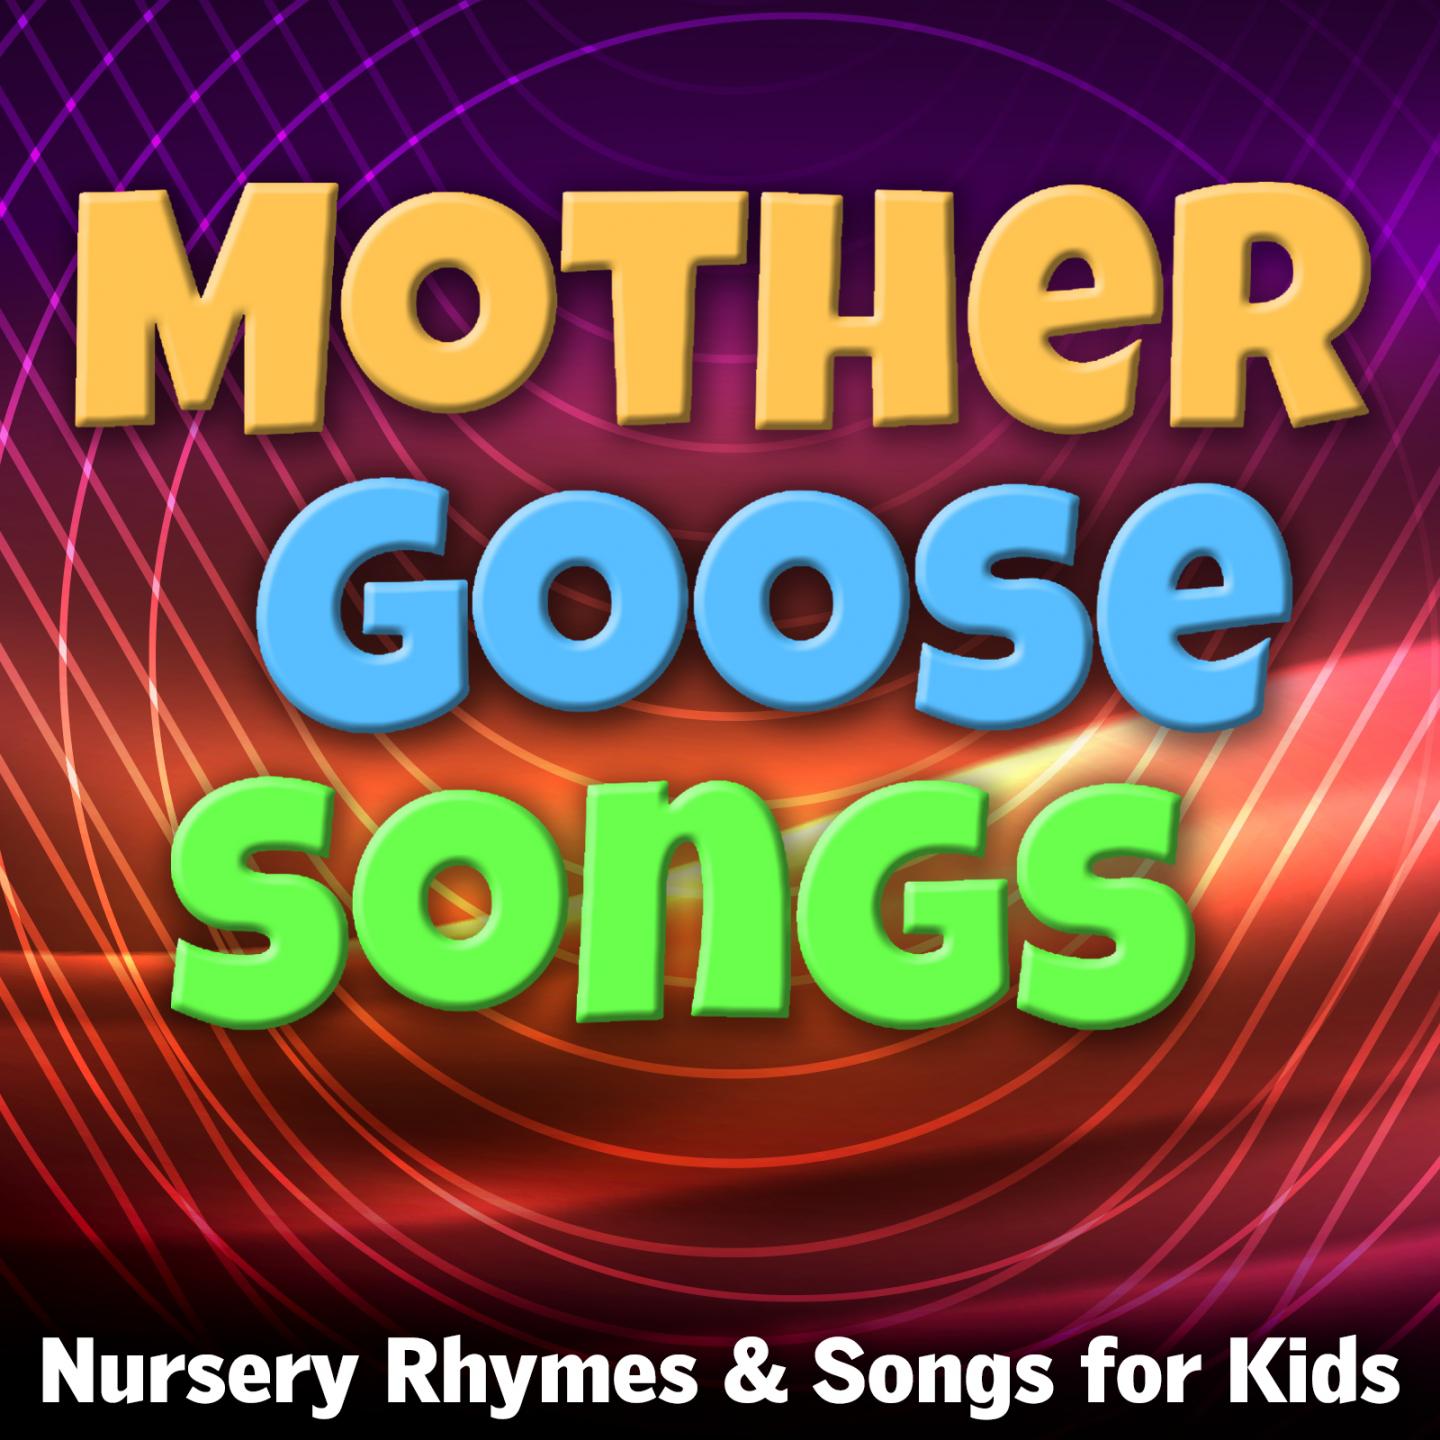 Mother Goose Nursery Rhymes & Songs for Kids